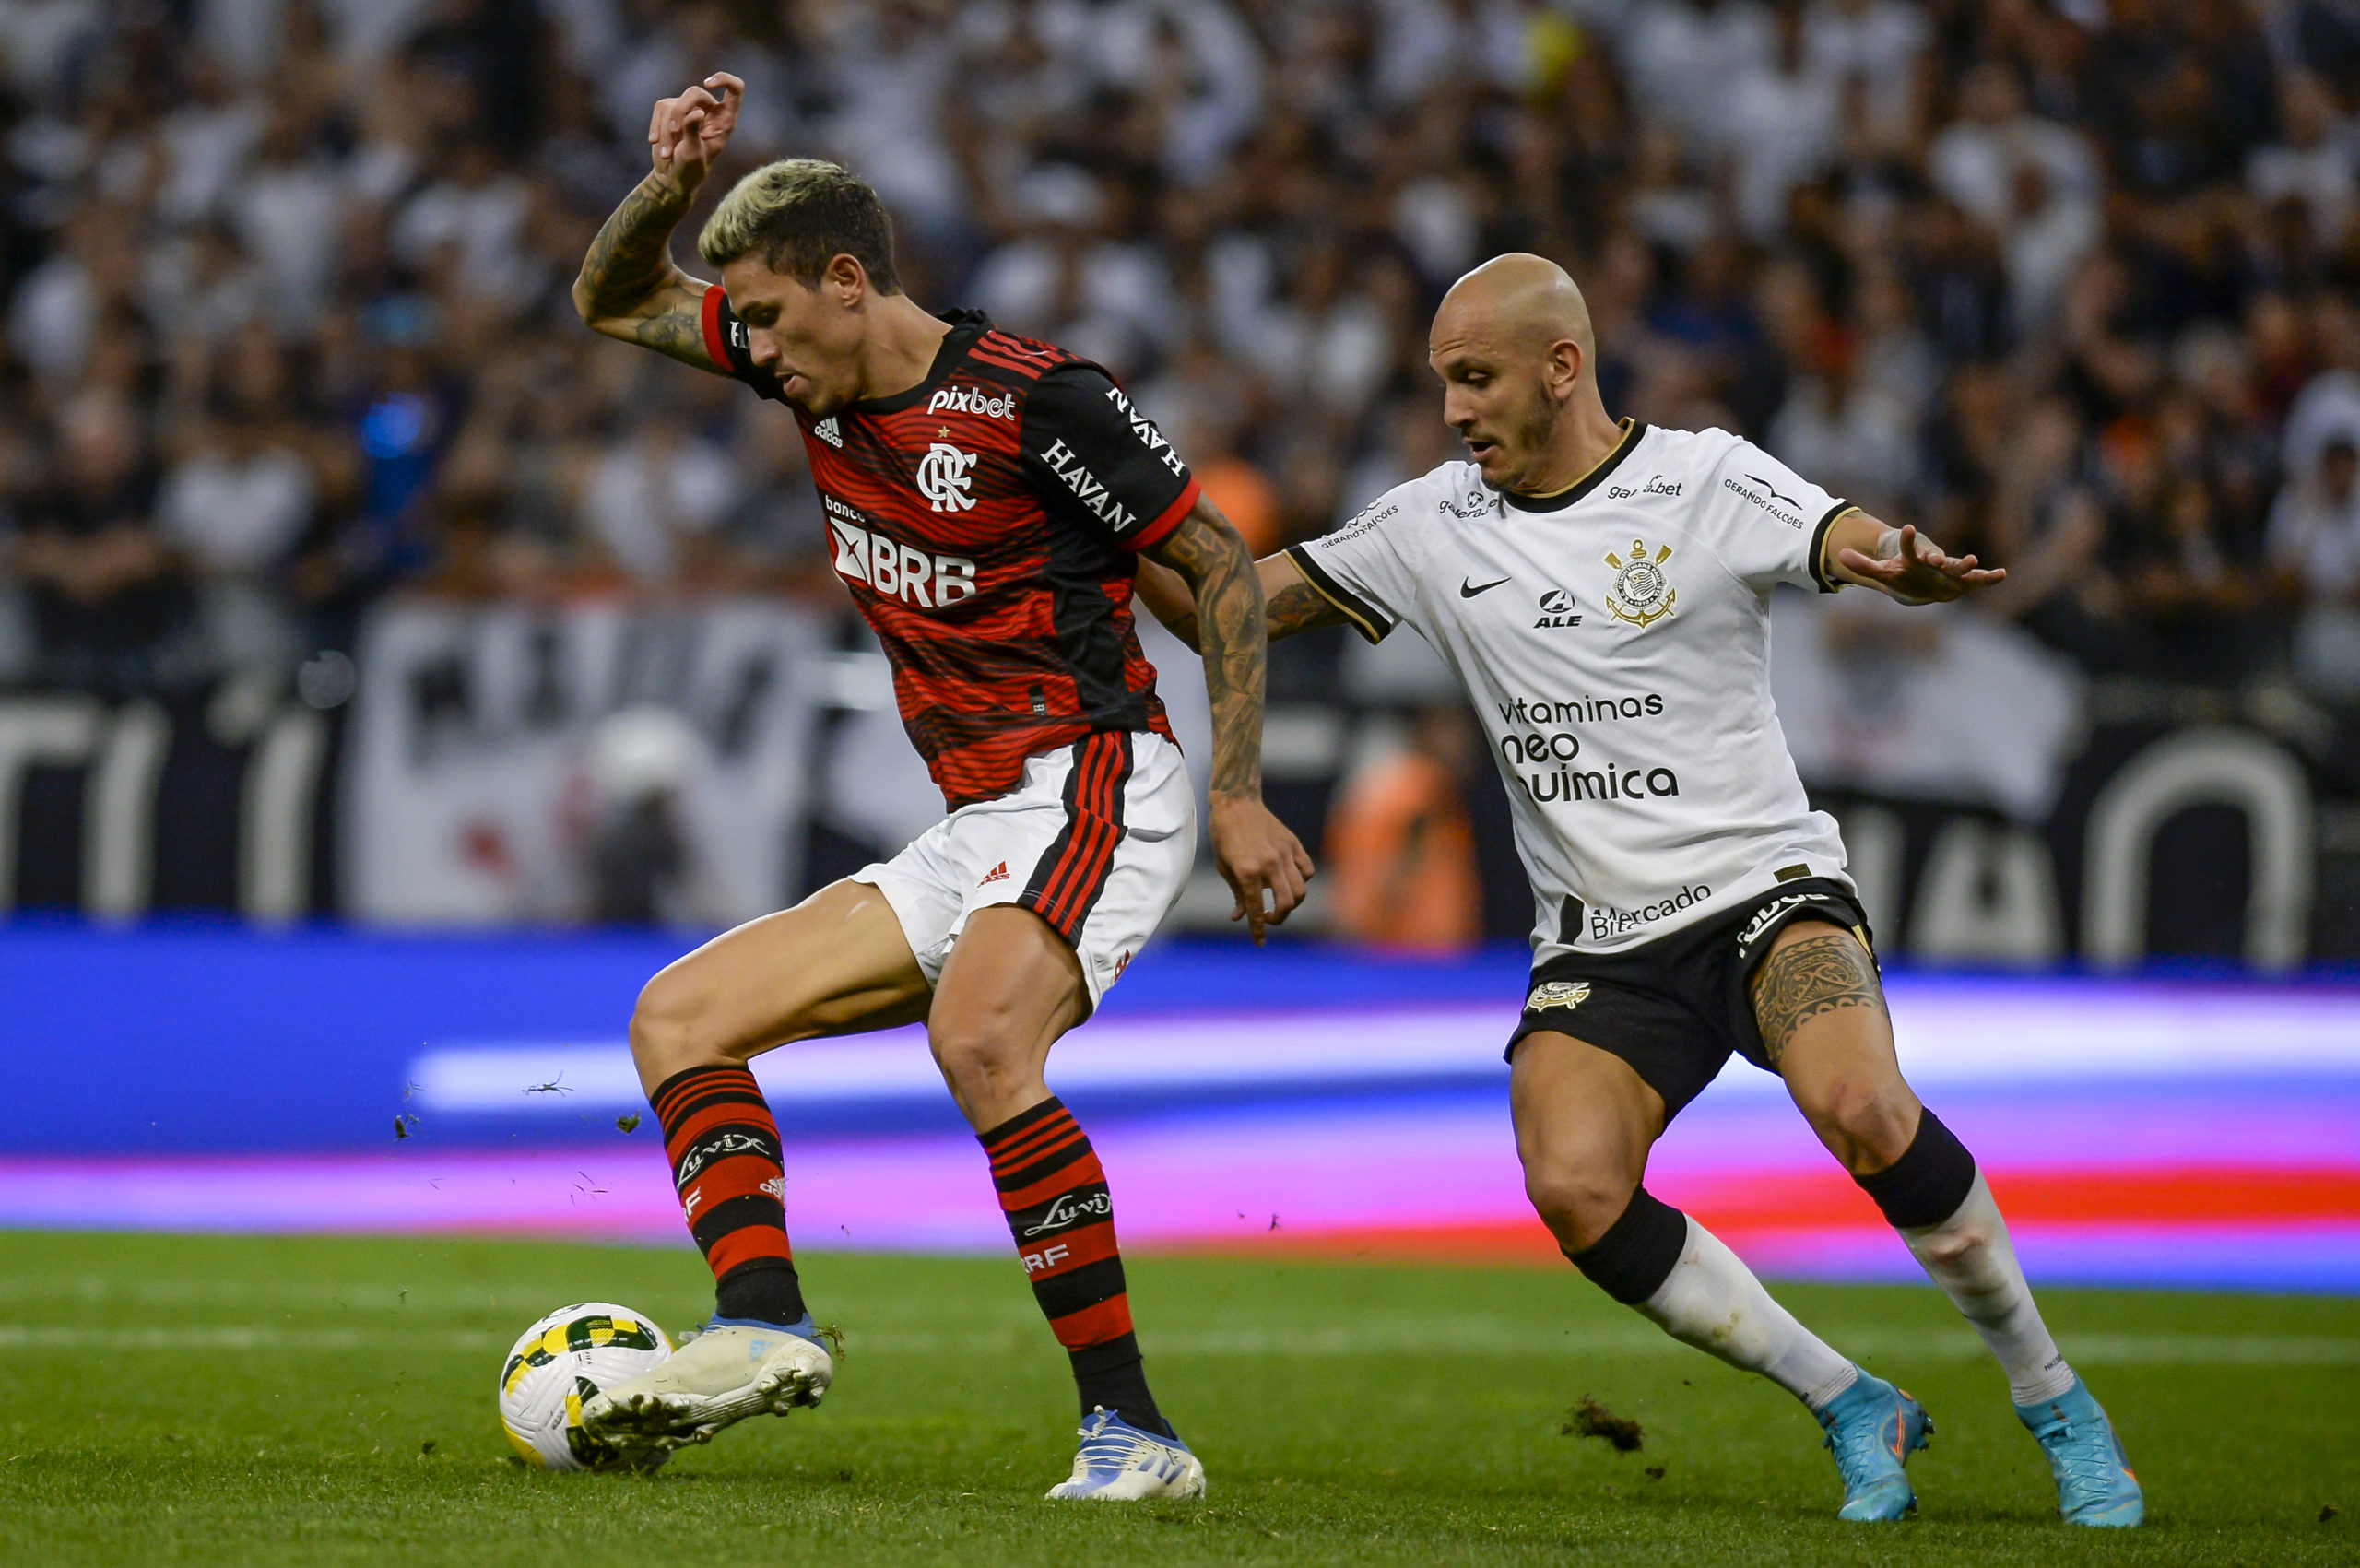 Reforçado e em evolução na temporada, Flamengo visita o Corinthians pelas quartas de final da Libertadores